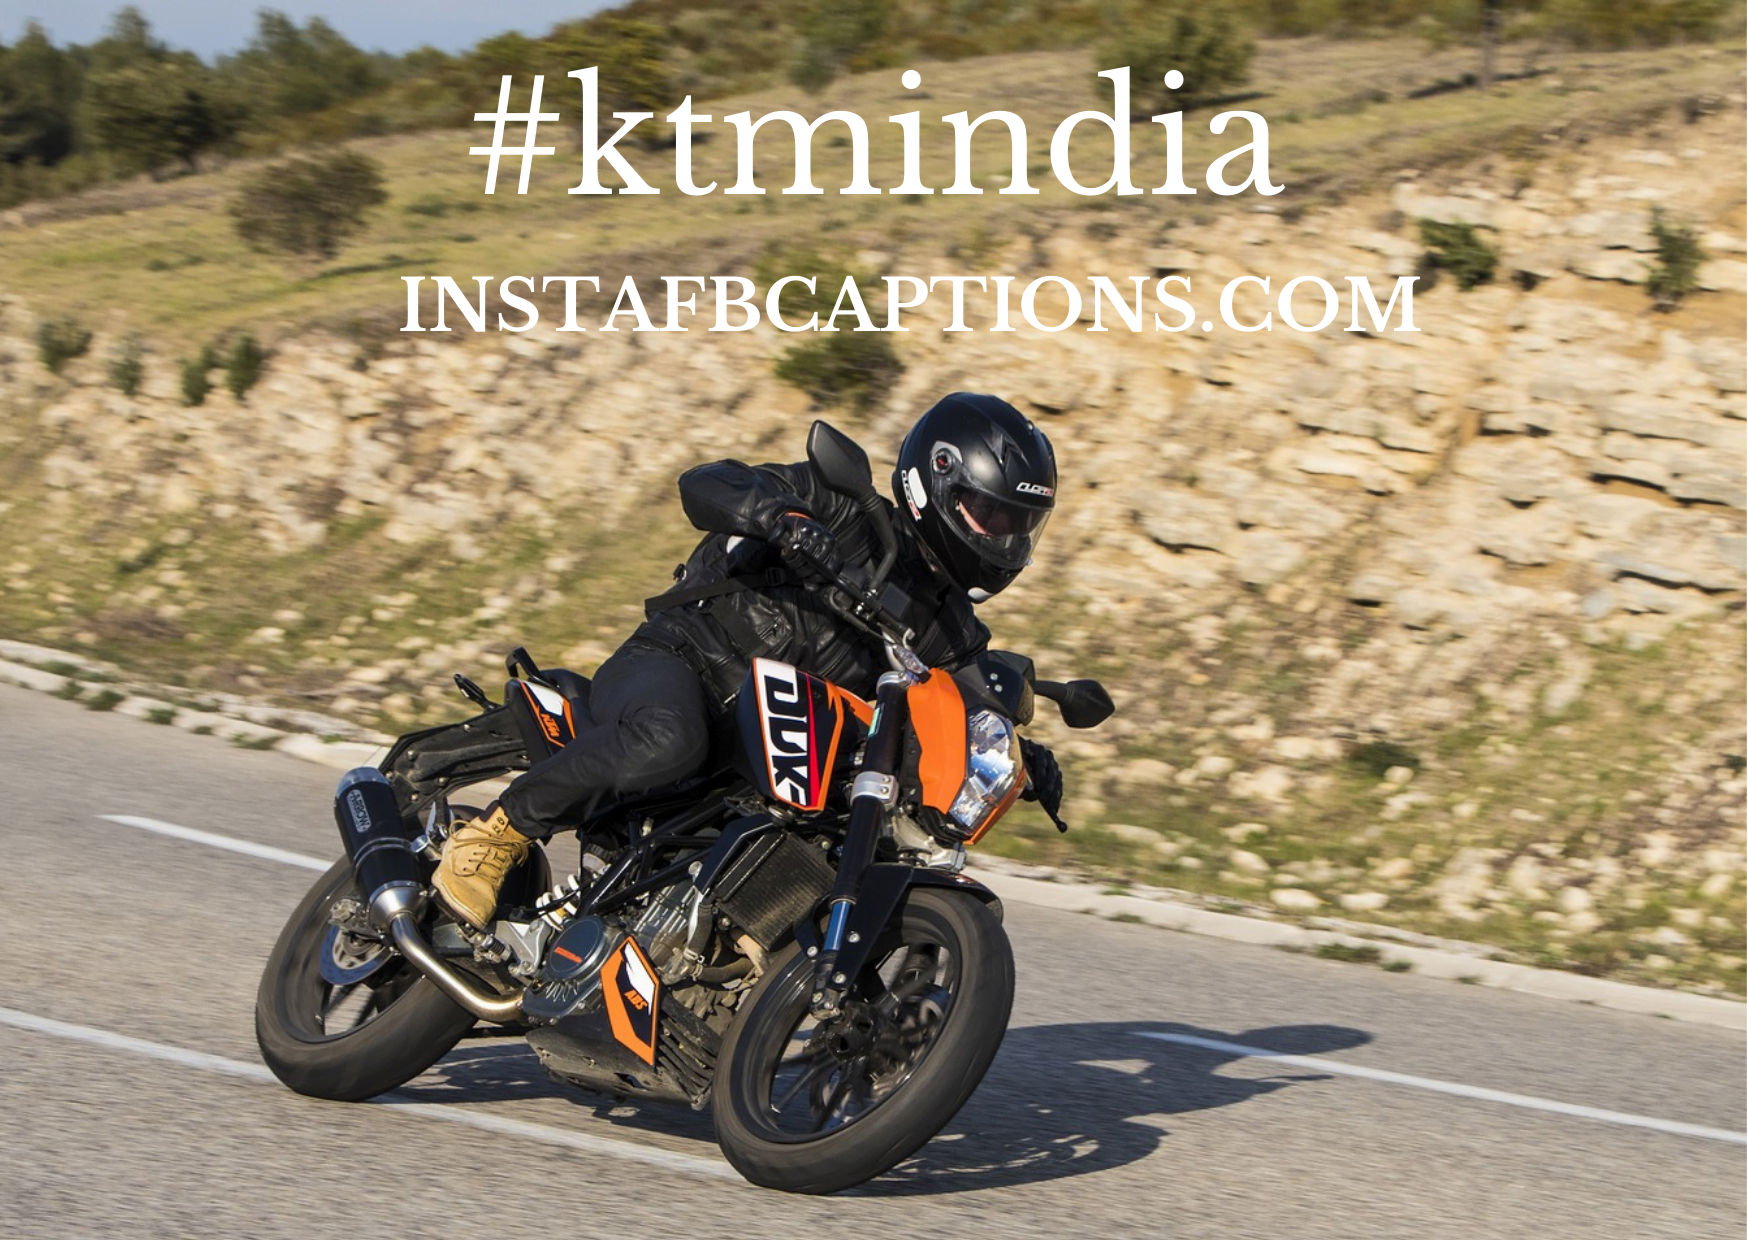 Famous Ktm Hashtags For Instagram  - Famous KTM Hashtags for Instagram - KTM Instagram Captions for  Bike Photos in 2022